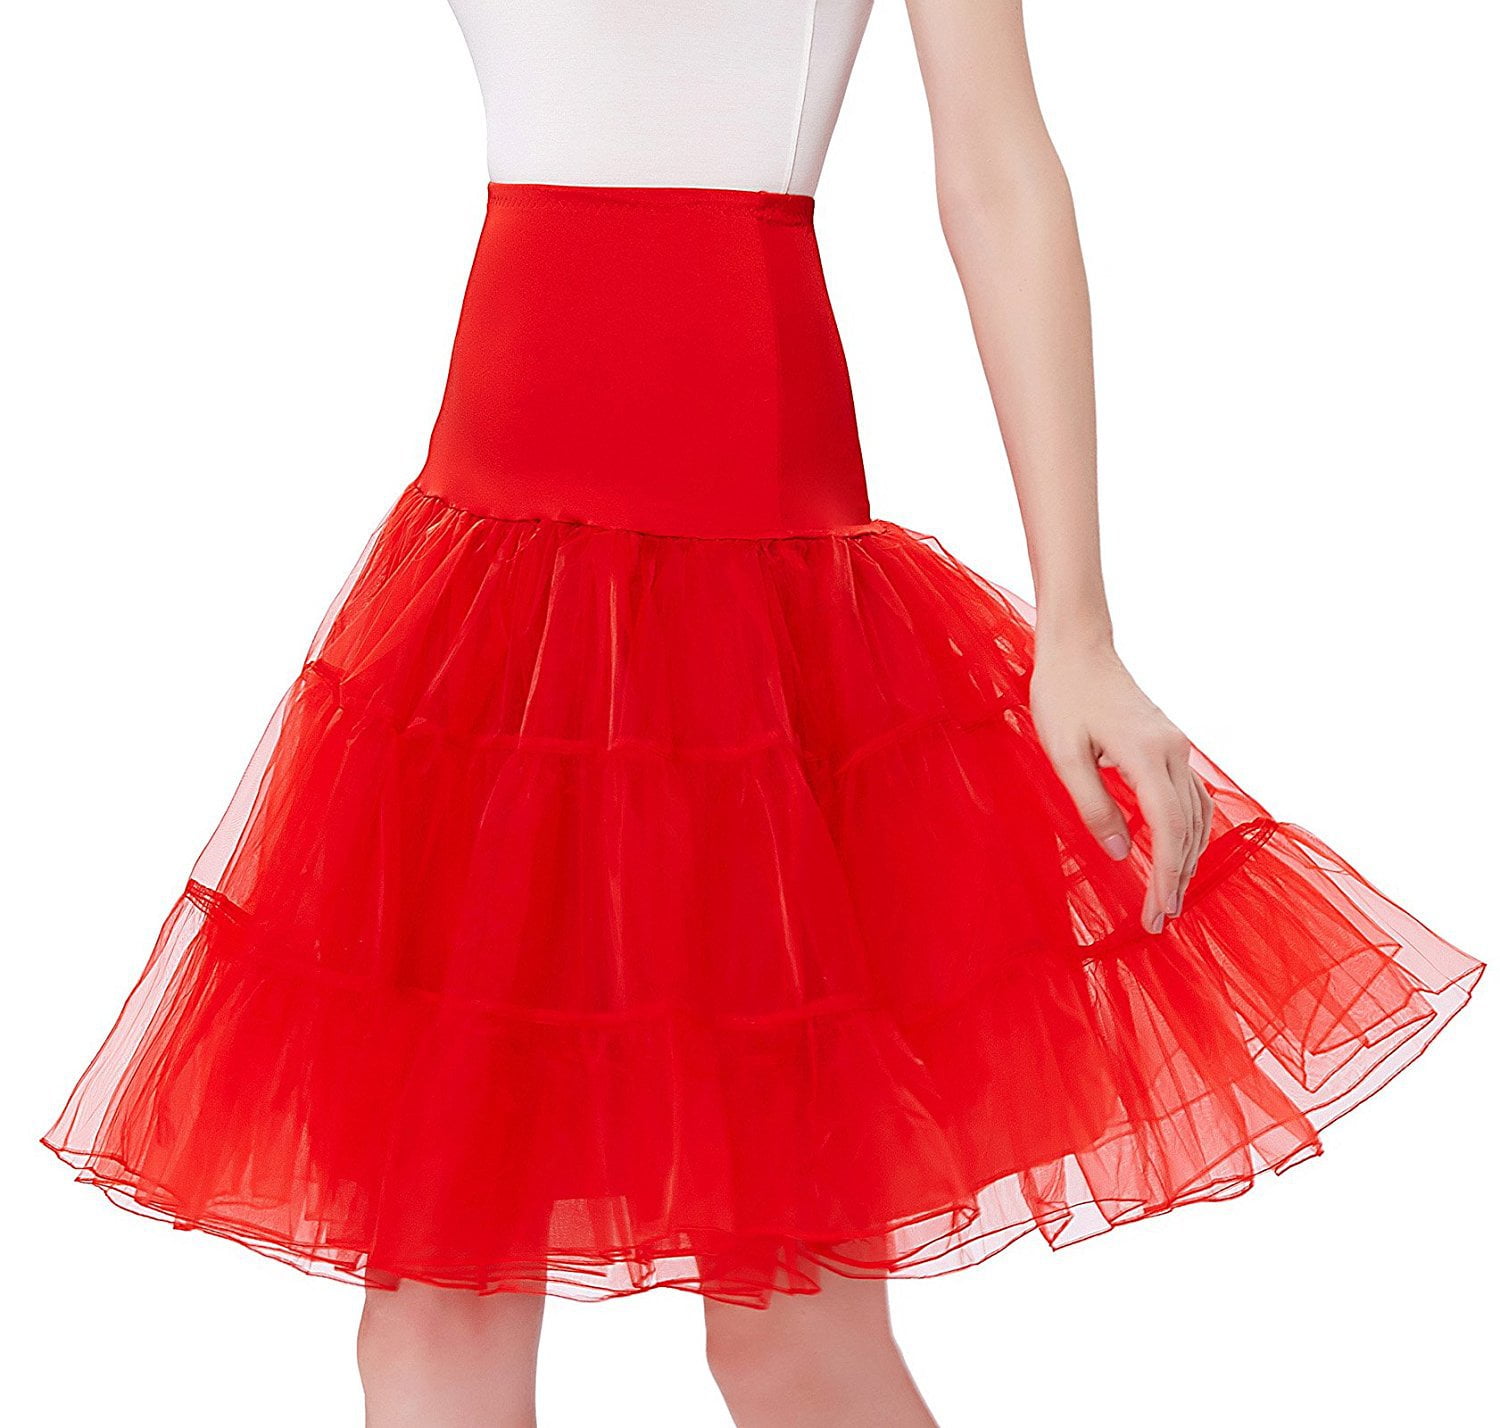 NEW 26" Vintage Petticoat Crinoline Underskirt Fancy Skirt Slips 50s Tutu dress 